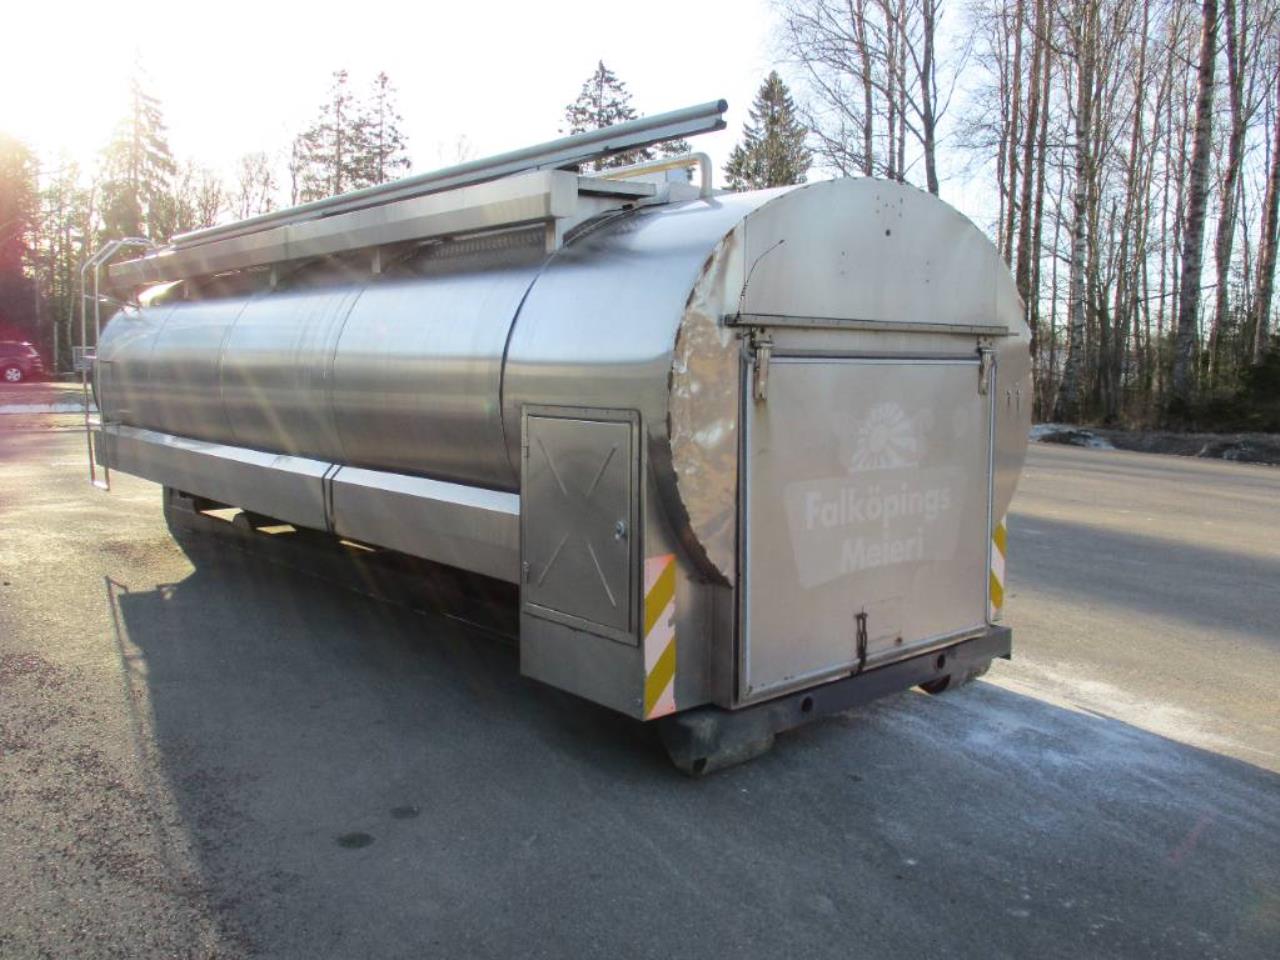 Landeteknik Mjölktank Lastväxlare Rostfri Tank 2004 - Övrigt